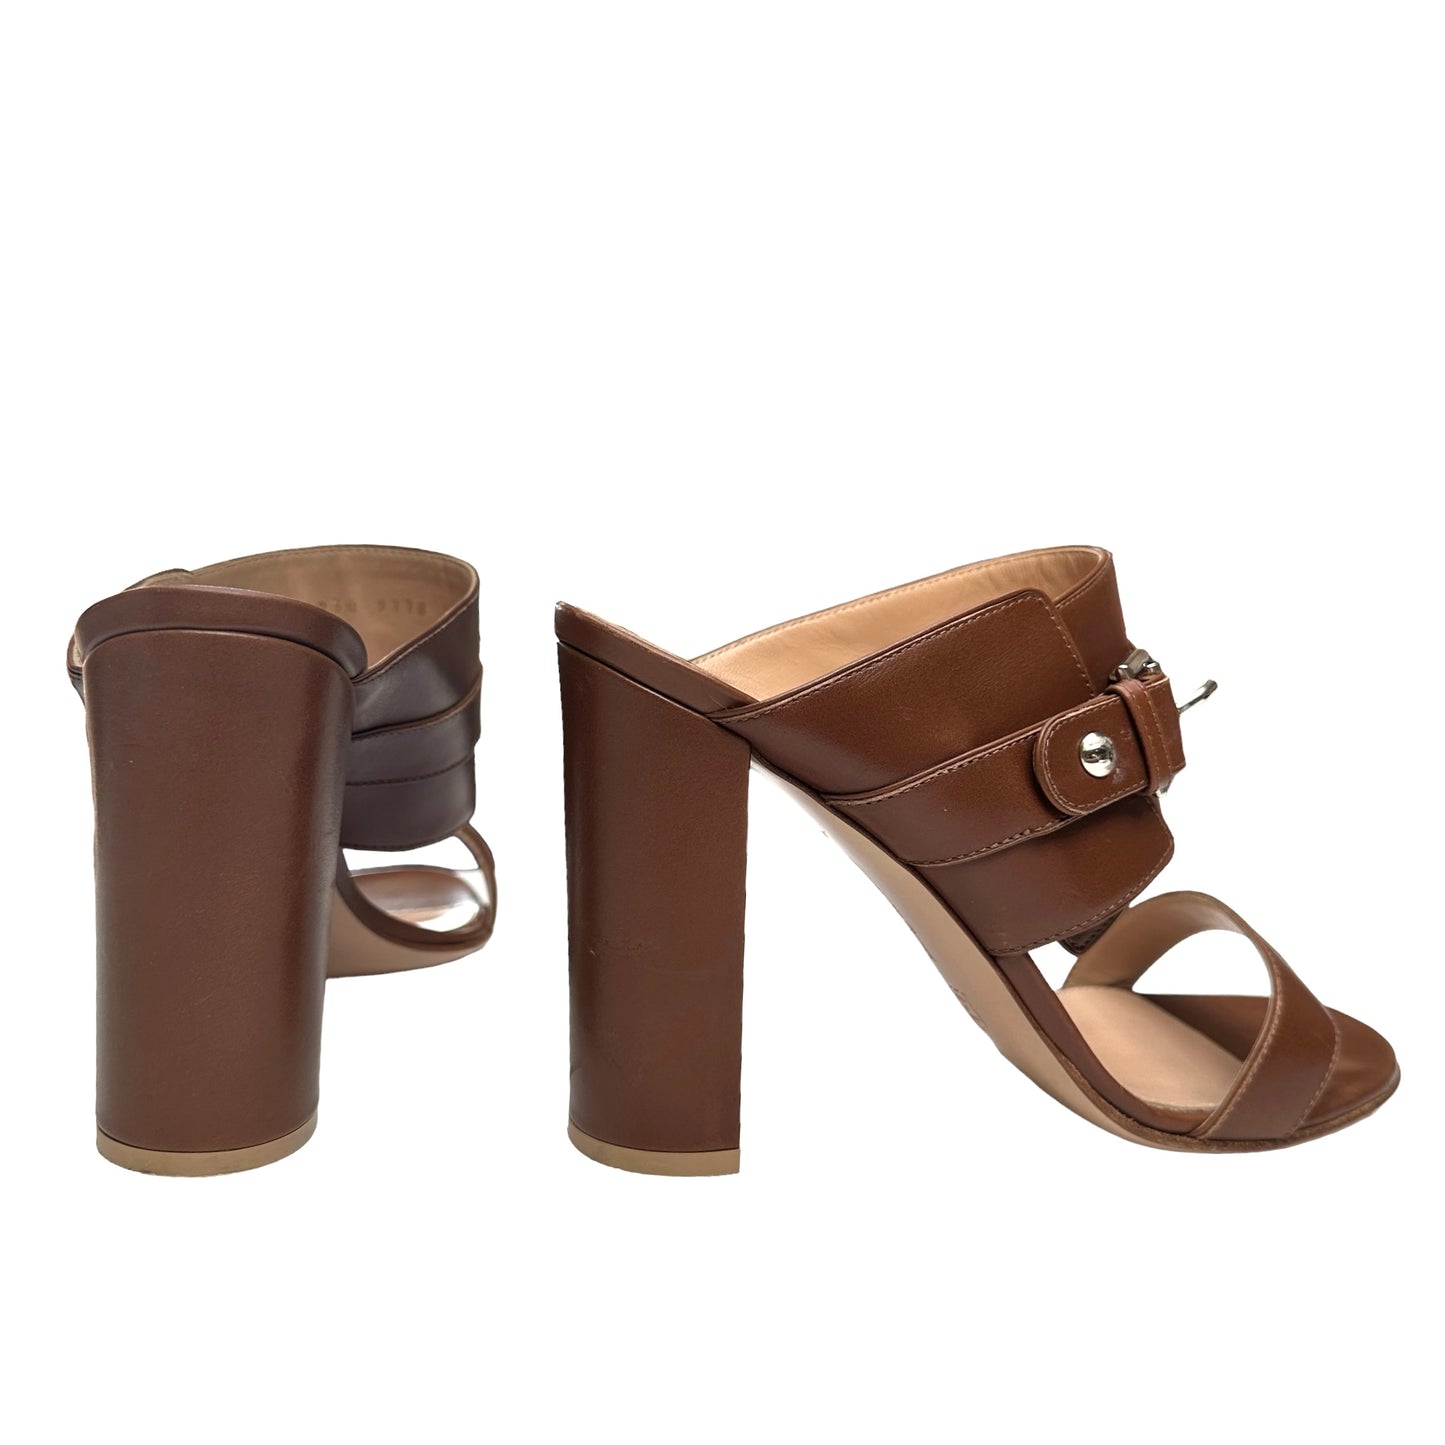 Brown Leather Heels - 9.5